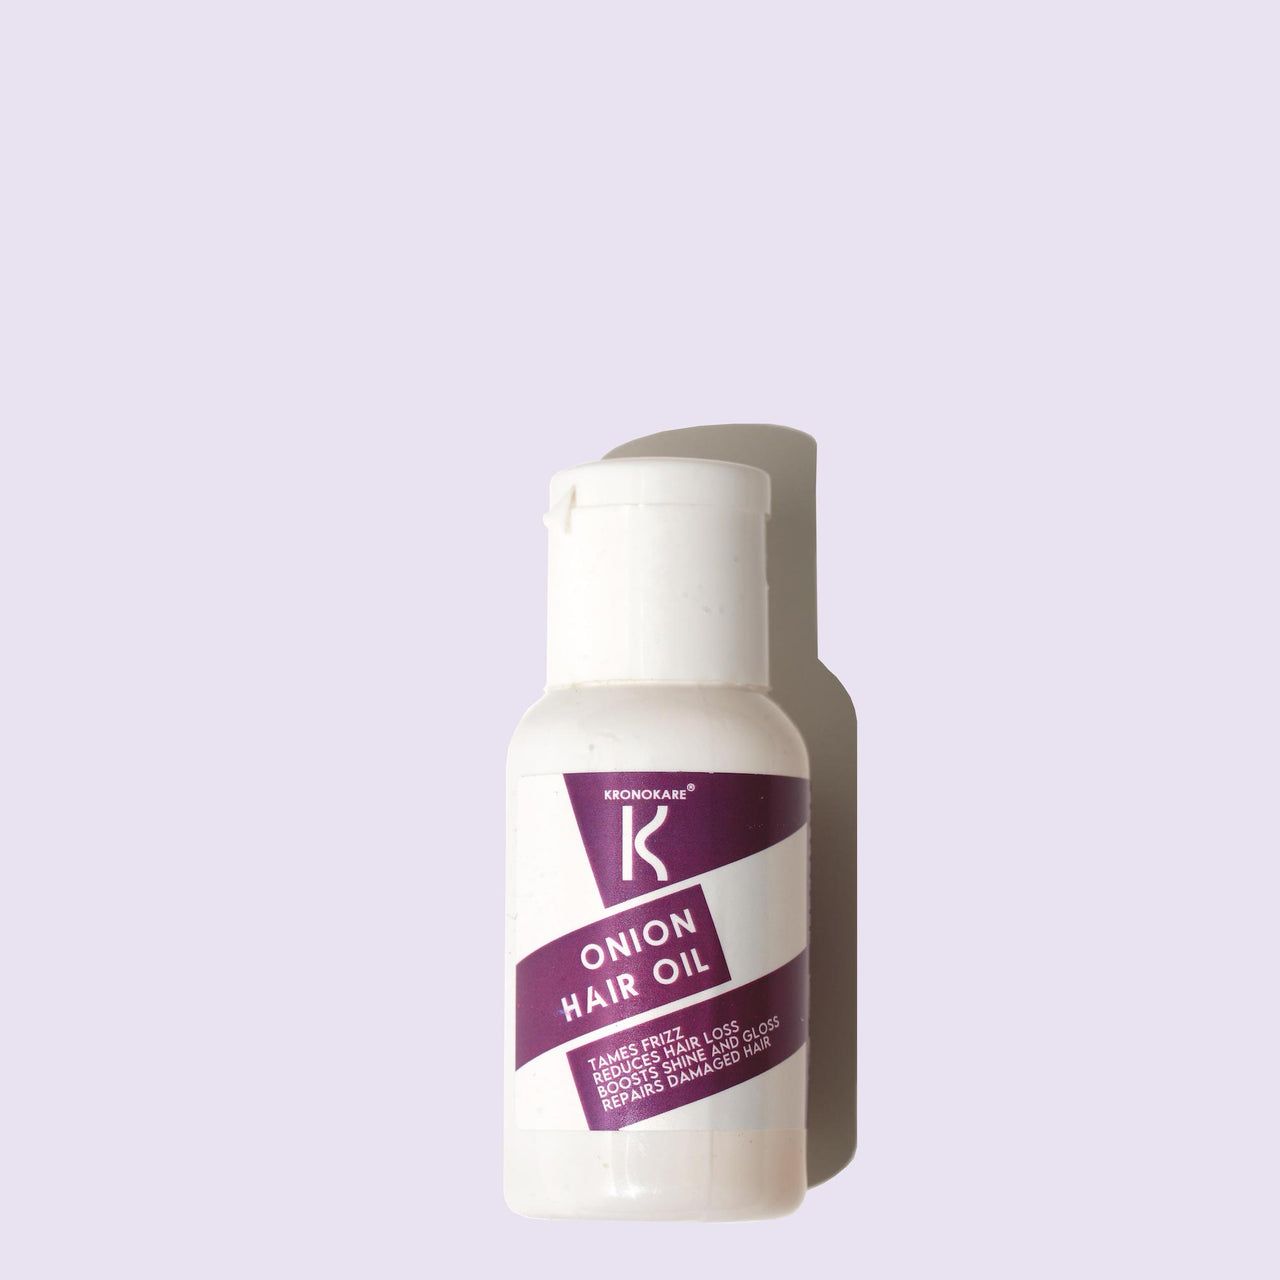 HAIR OIL - Onion Hair Oil - 30 ml (Ylang-Ylang)